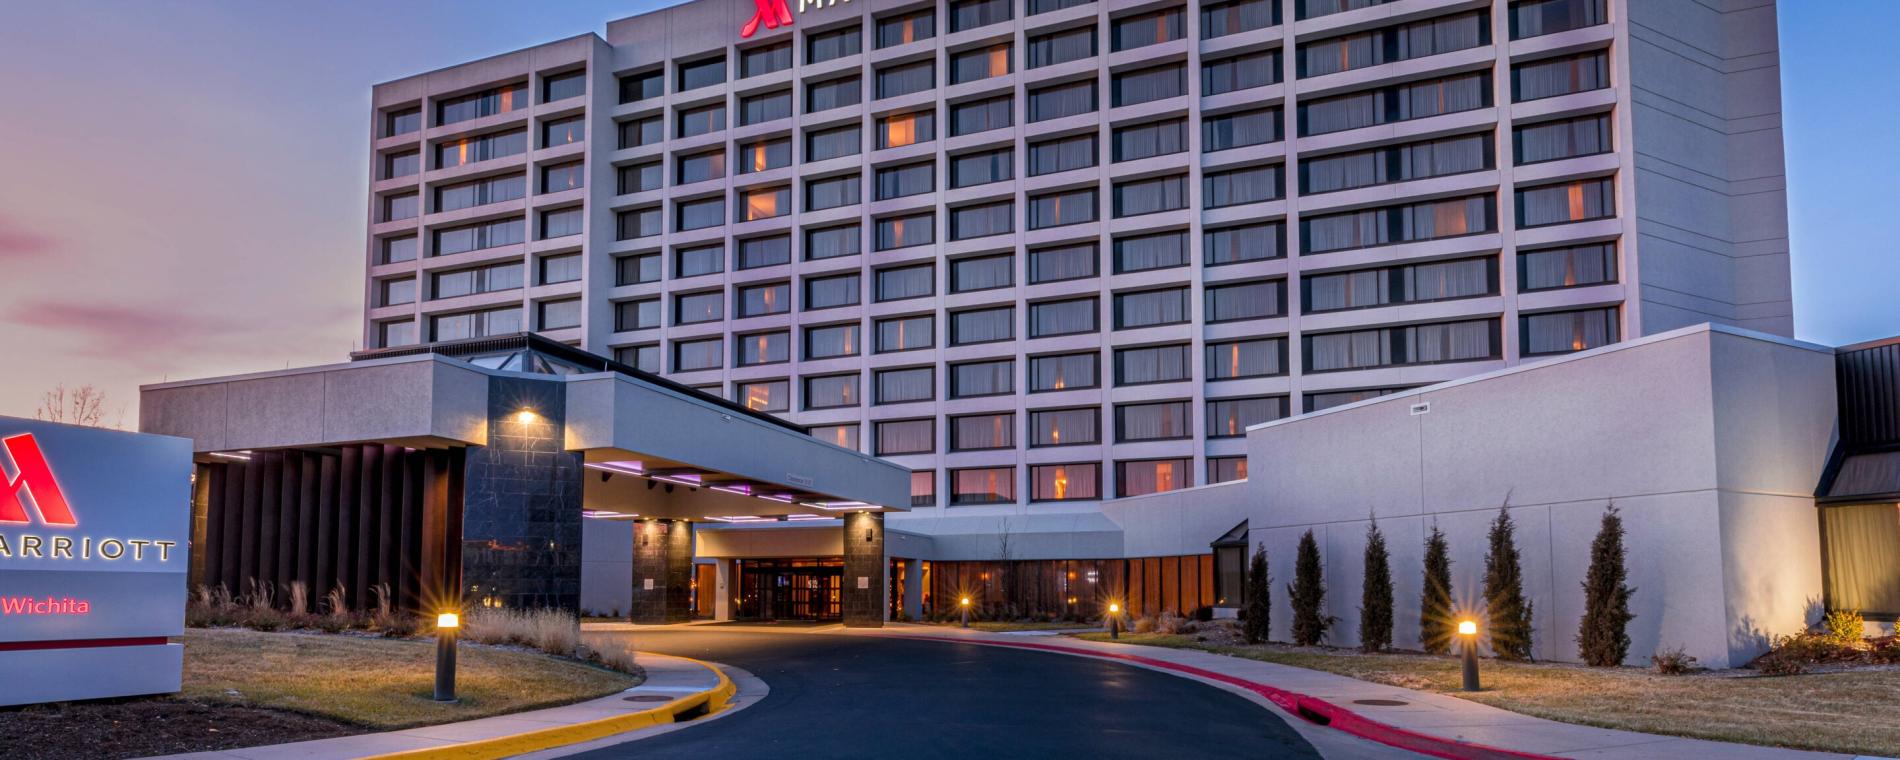 Wichita Marriott Hotel Exterior Updated